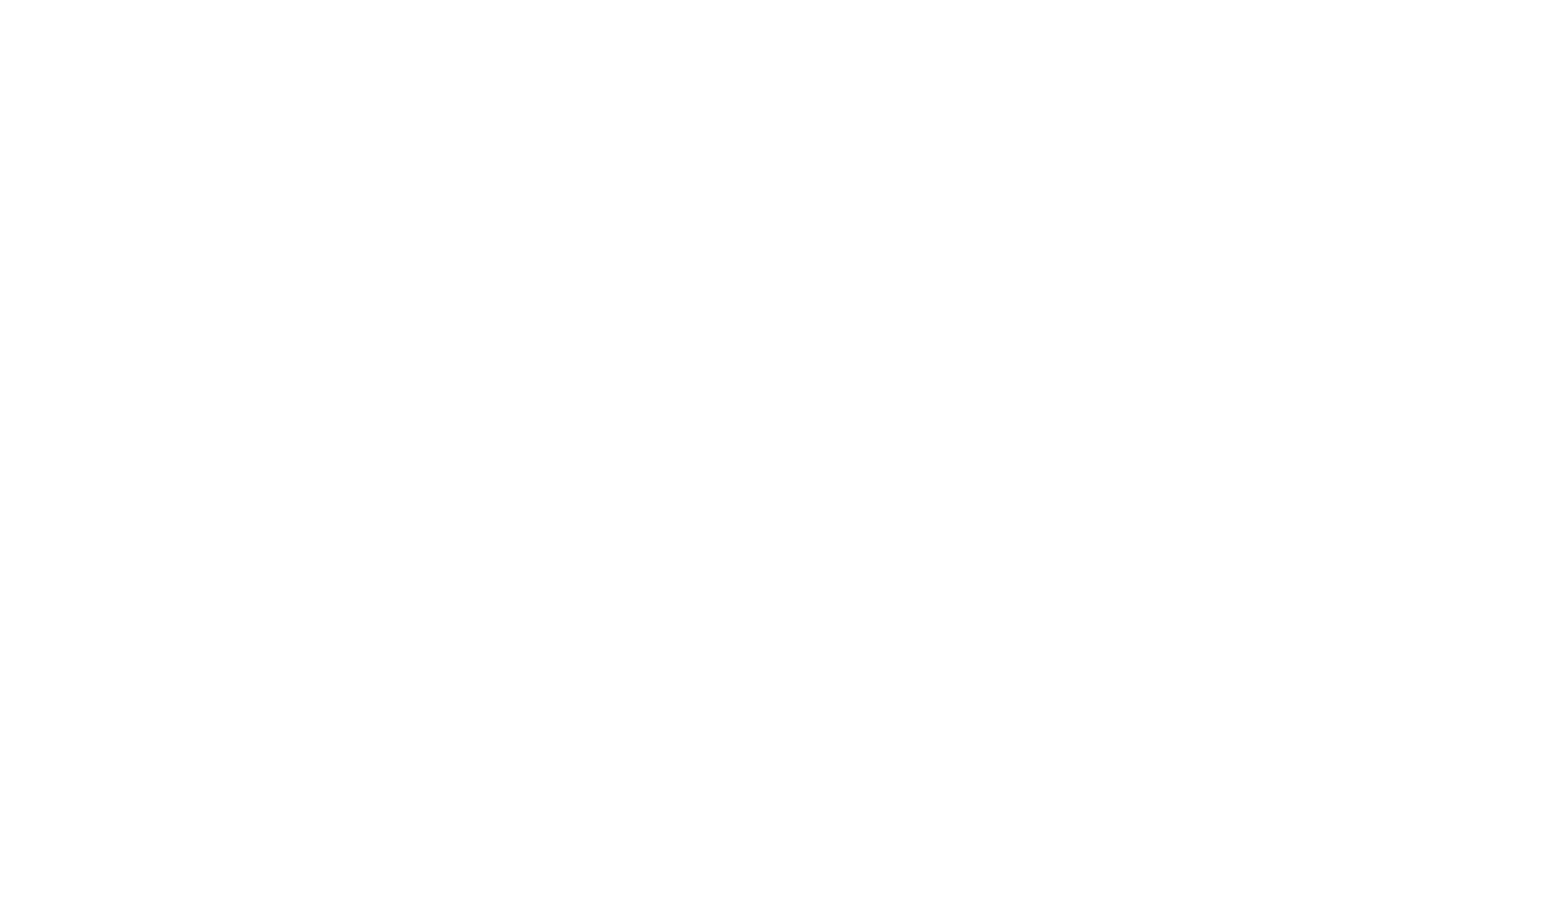 HOCH WERK STUDIOS Foto Film Agentur Karlsruhe Stuttgart Logo weiß